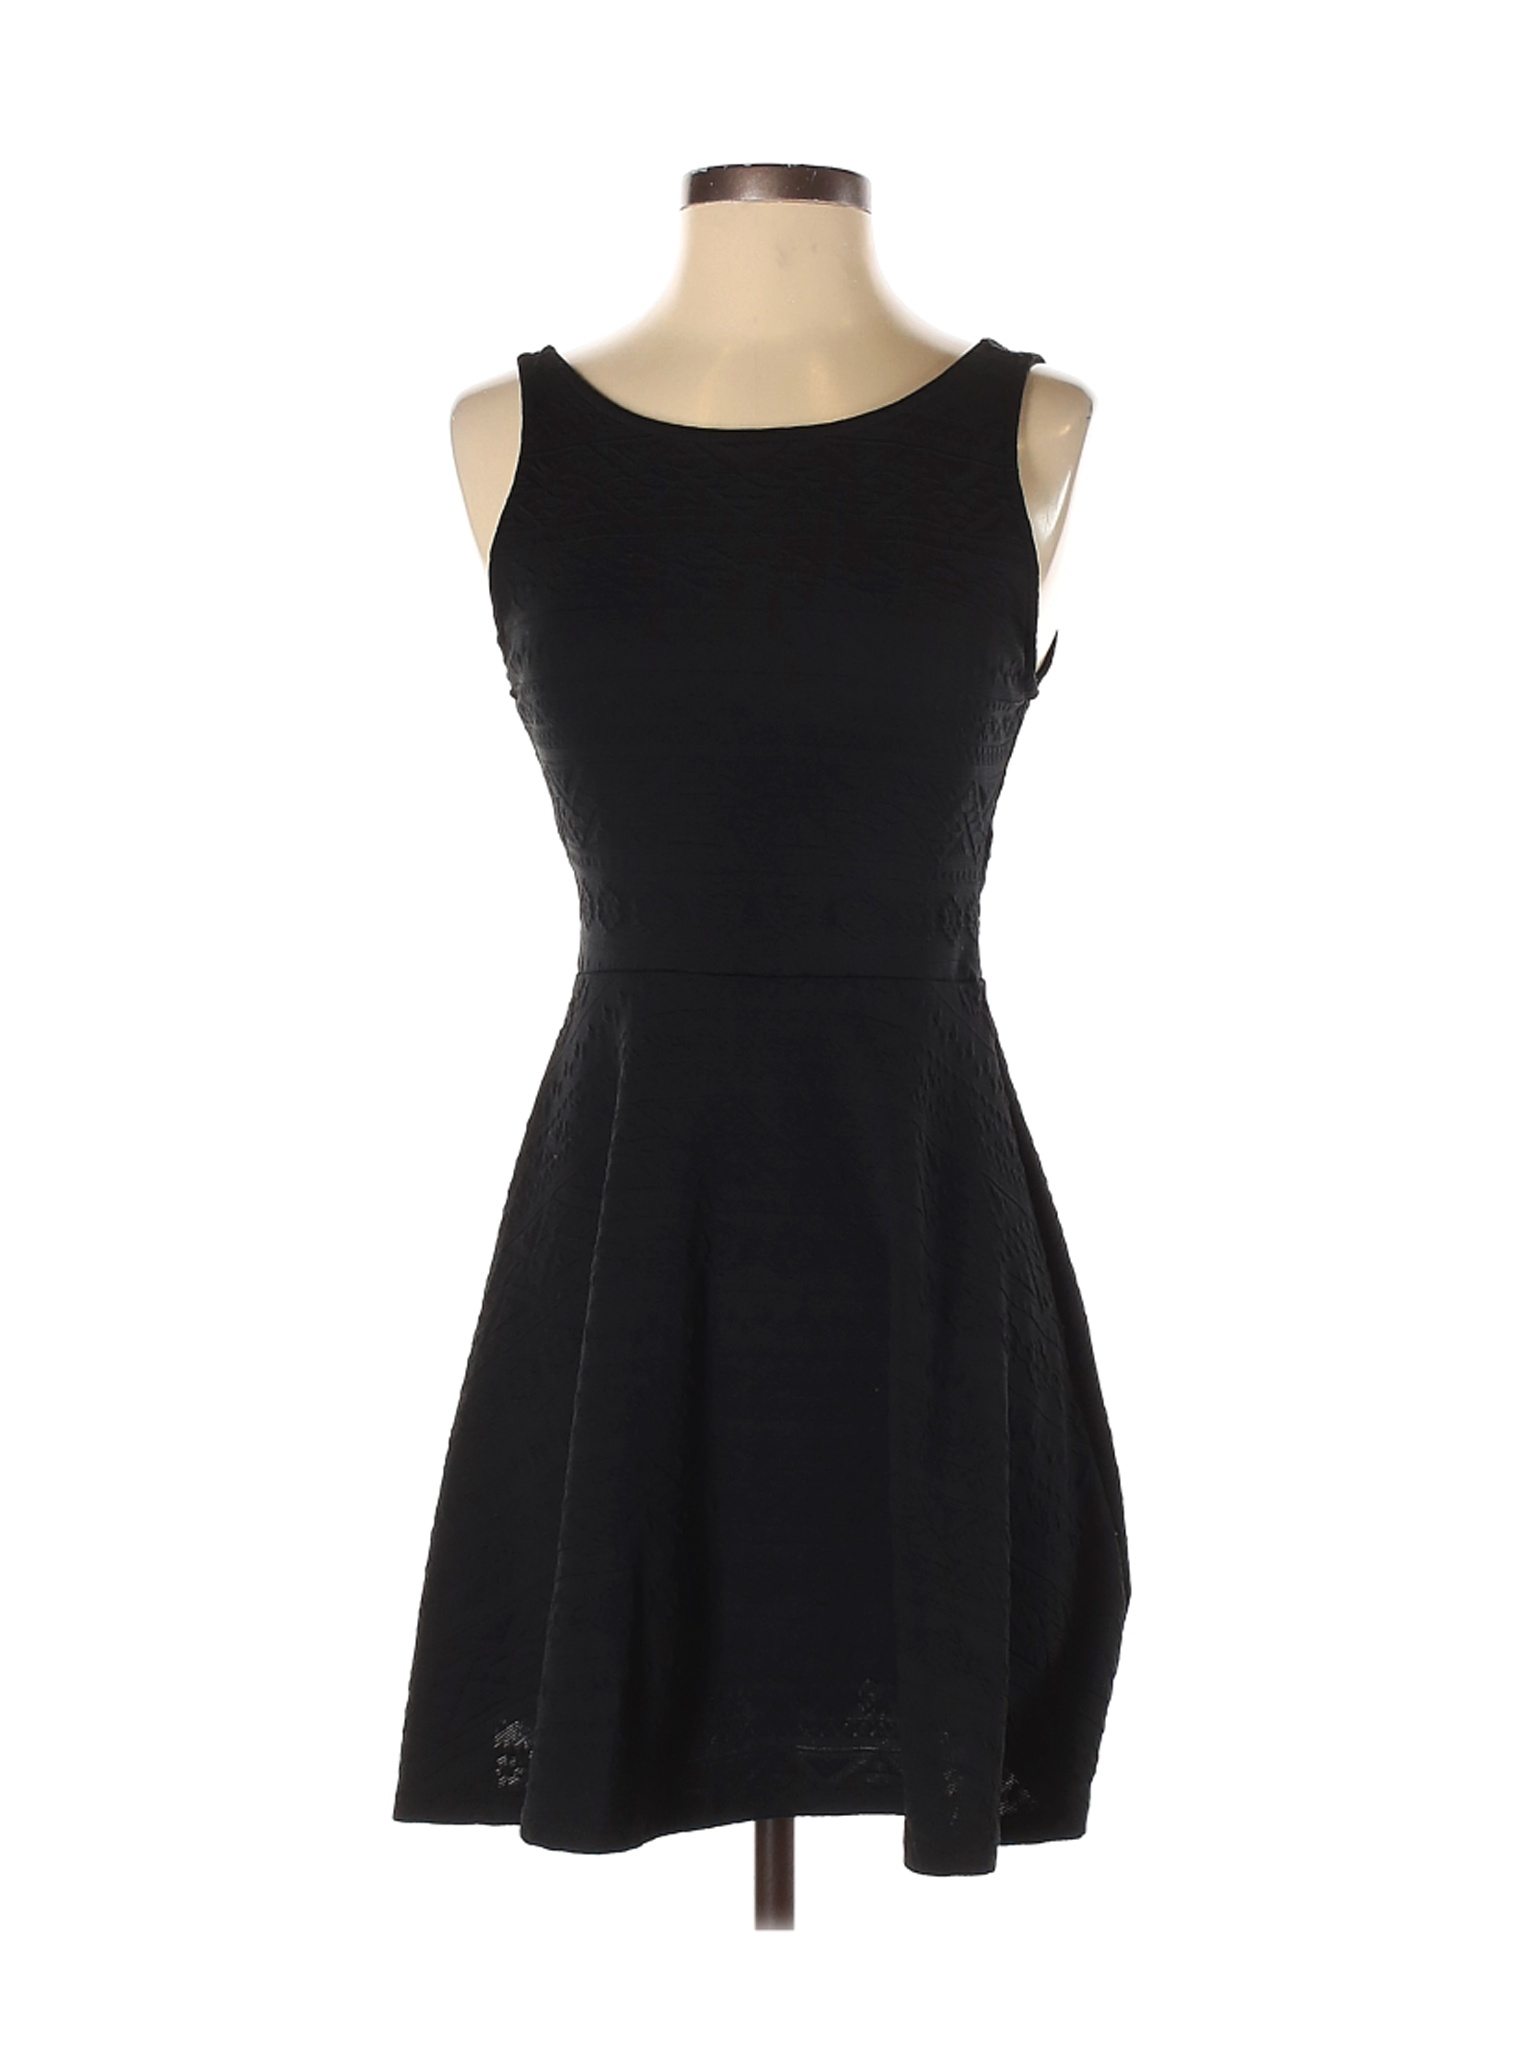 Ginger G. Women Black Casual Dress S | eBay